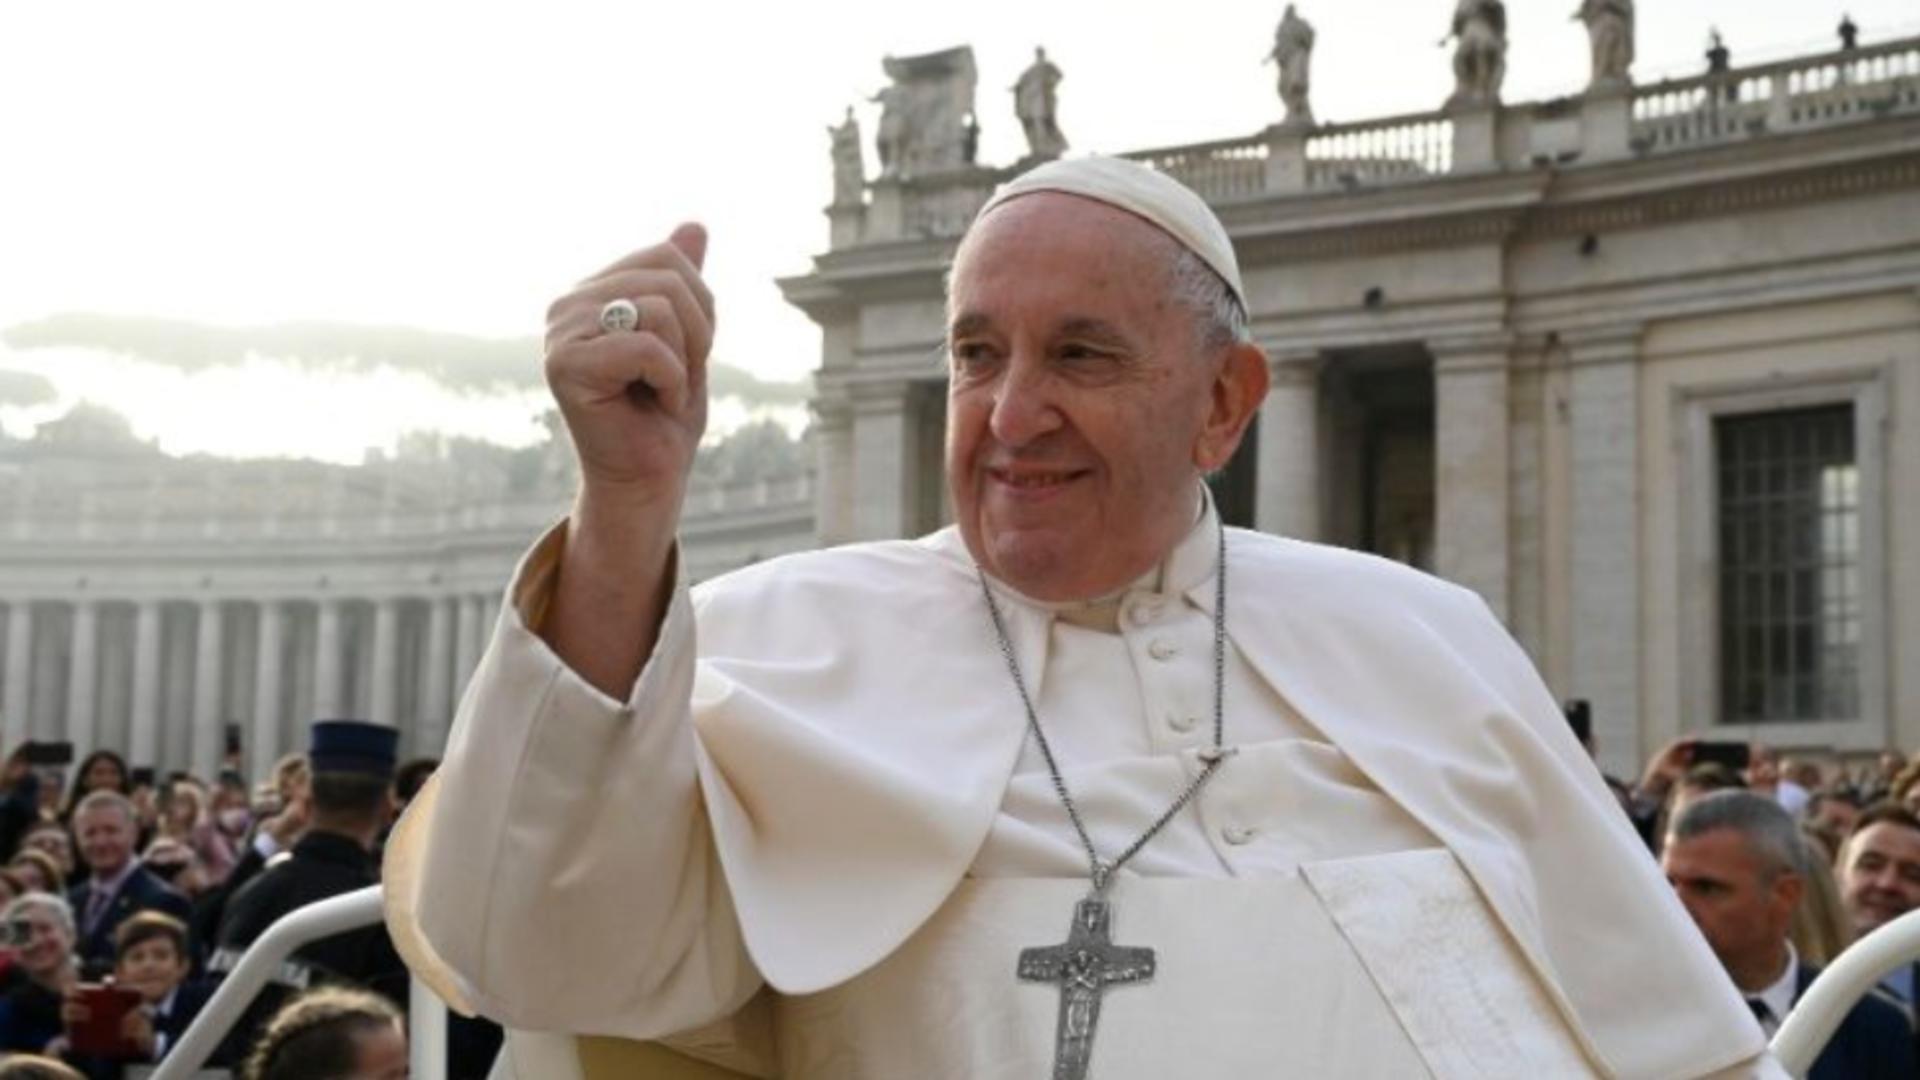 Papa Francisc Foto: VaticanNews.va